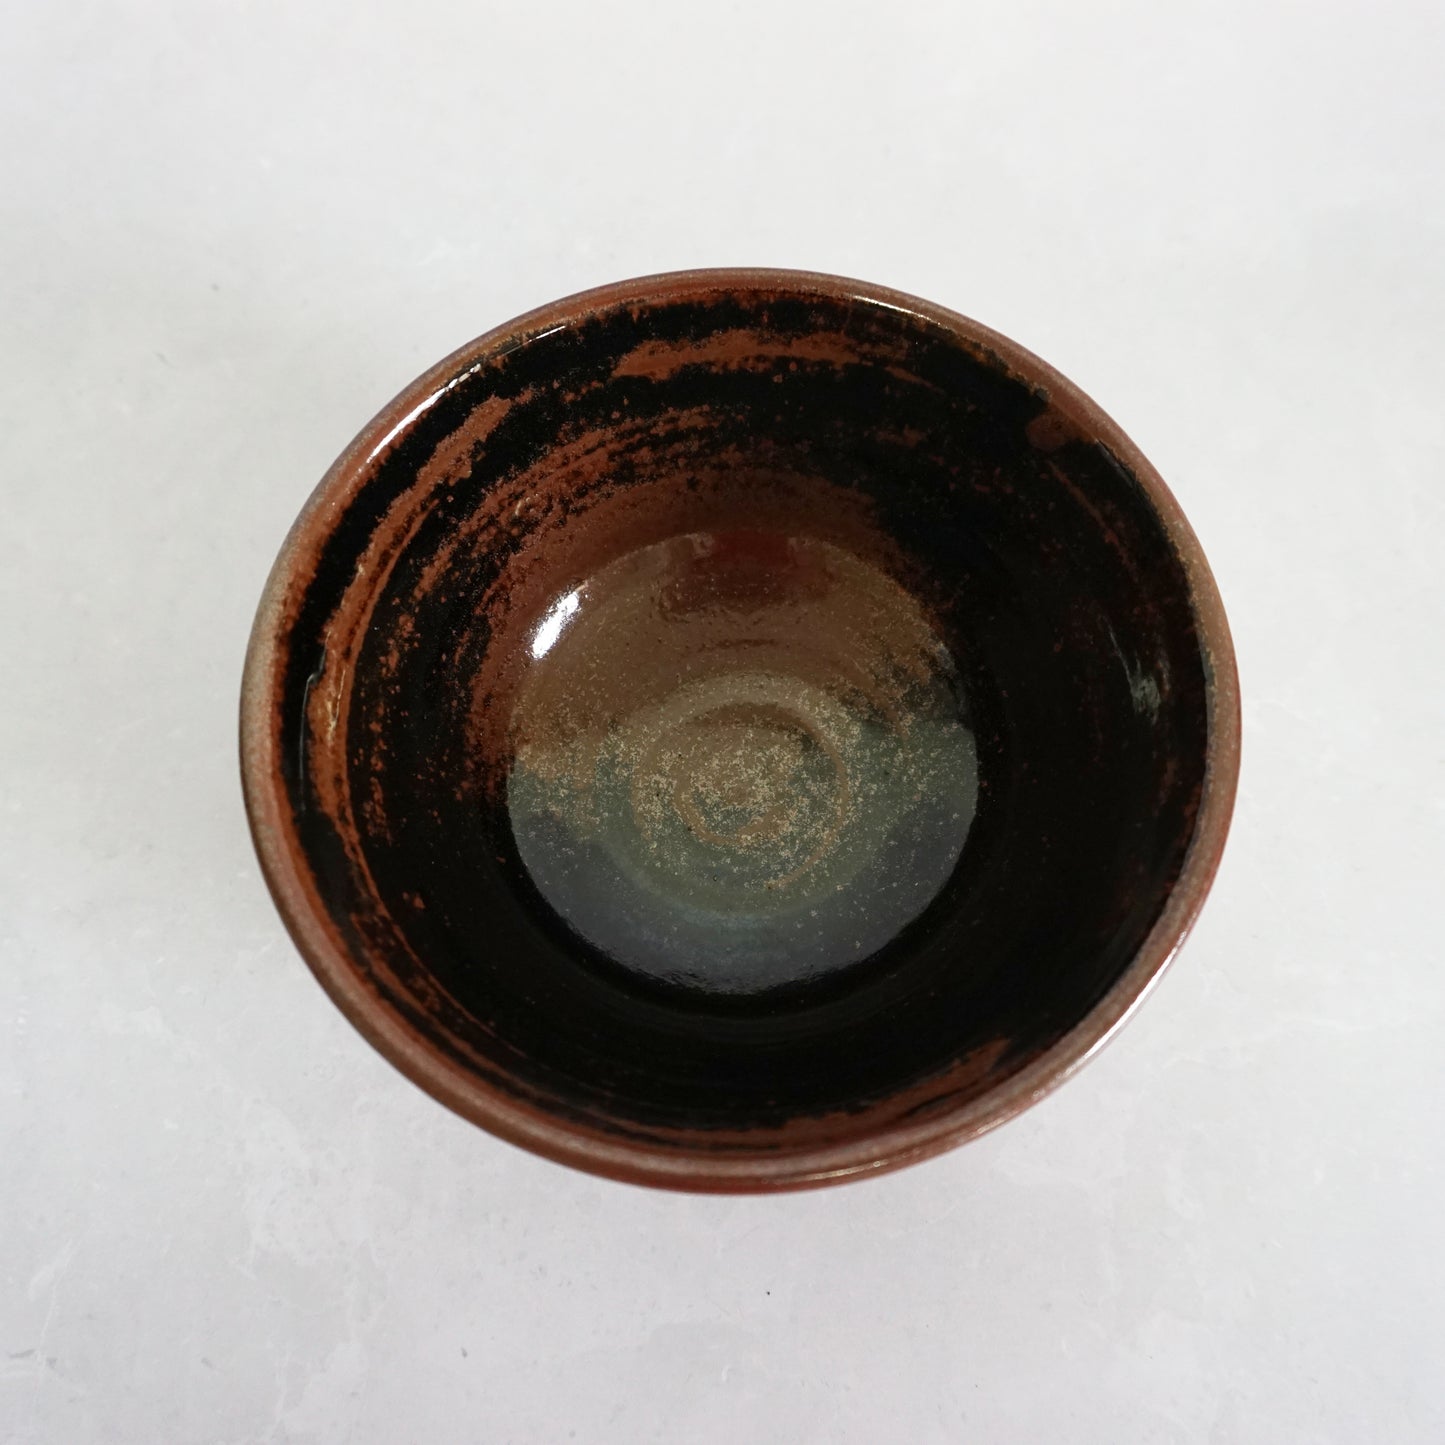 Douglas White Small Stoneware Bowl